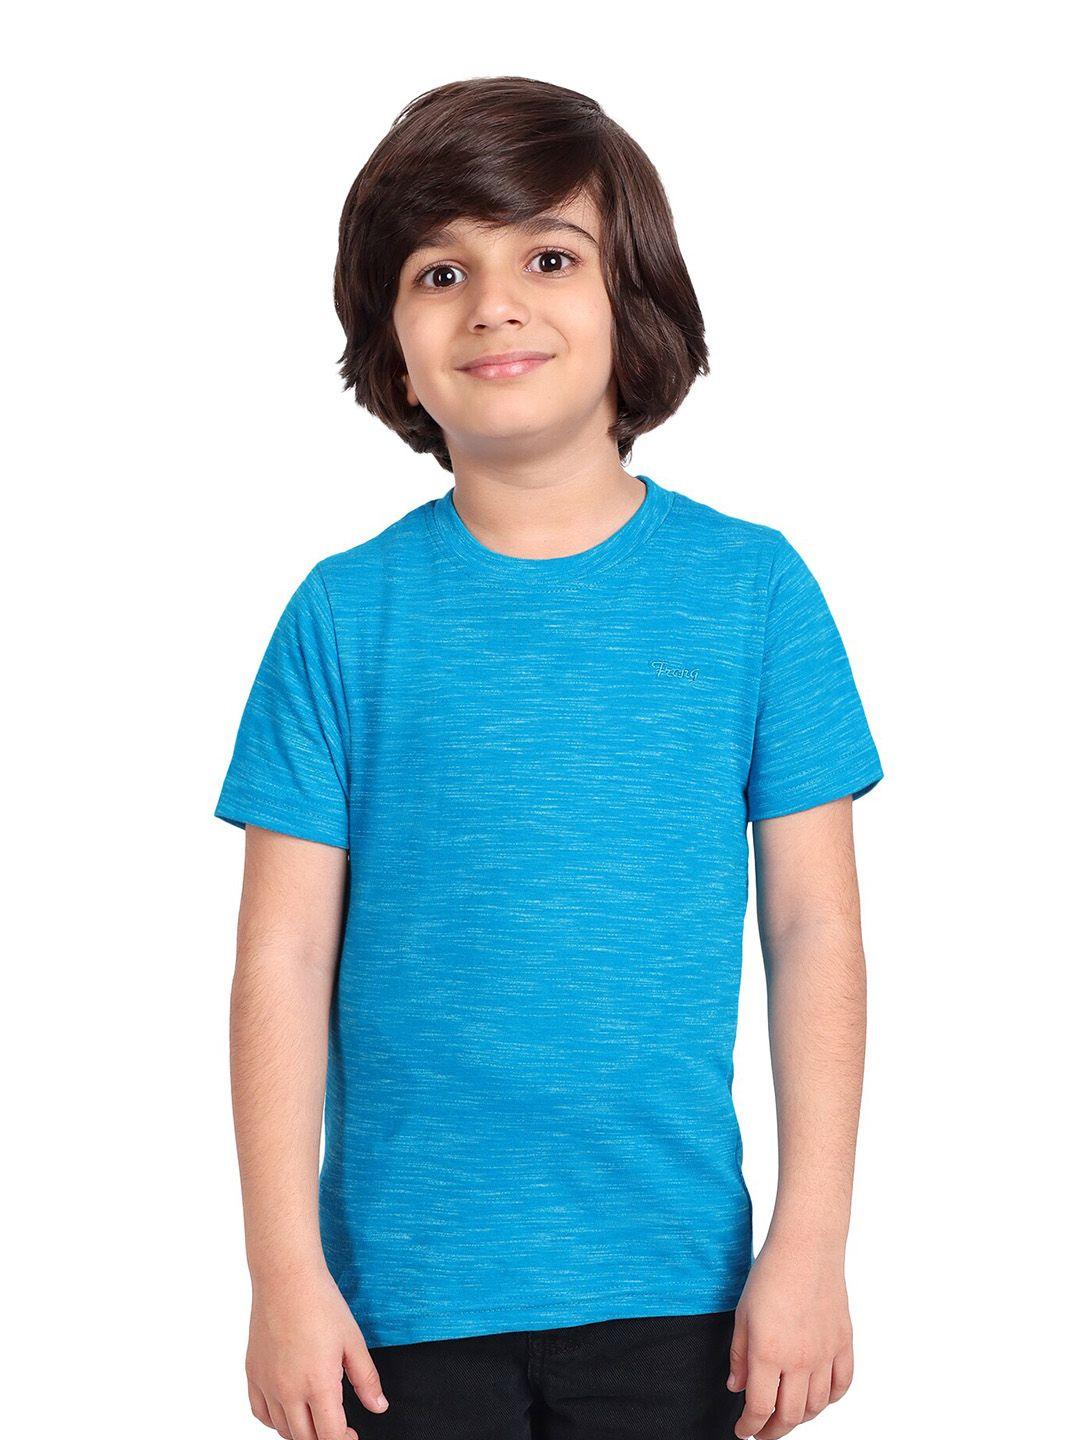 BAESD Boys Blue T-shirt